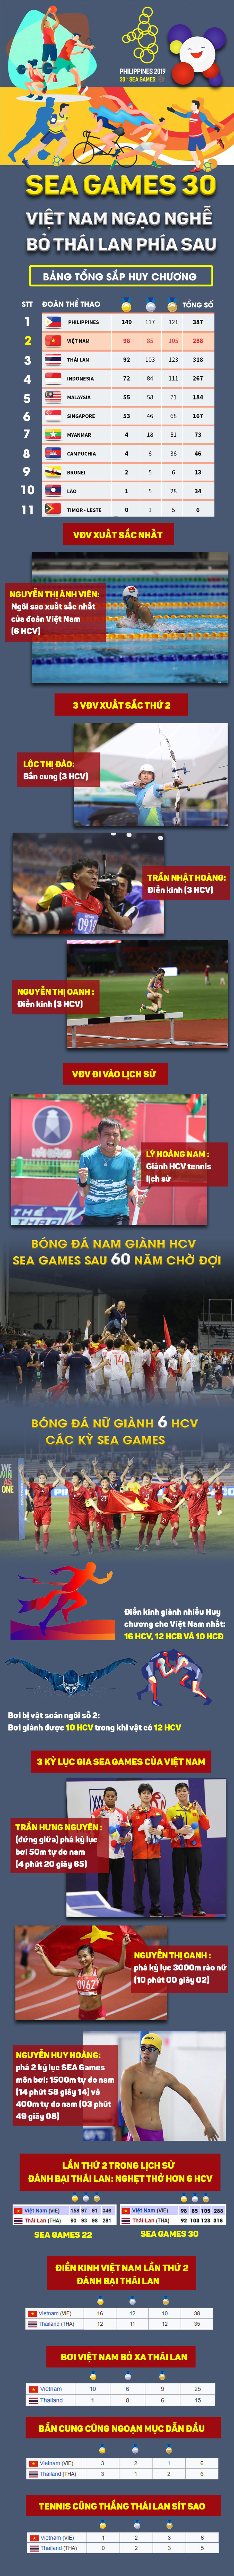 Đua vàng SEA Games: Việt Nam giật bao nhiêu huy chương vượt Thái Lan? - 1